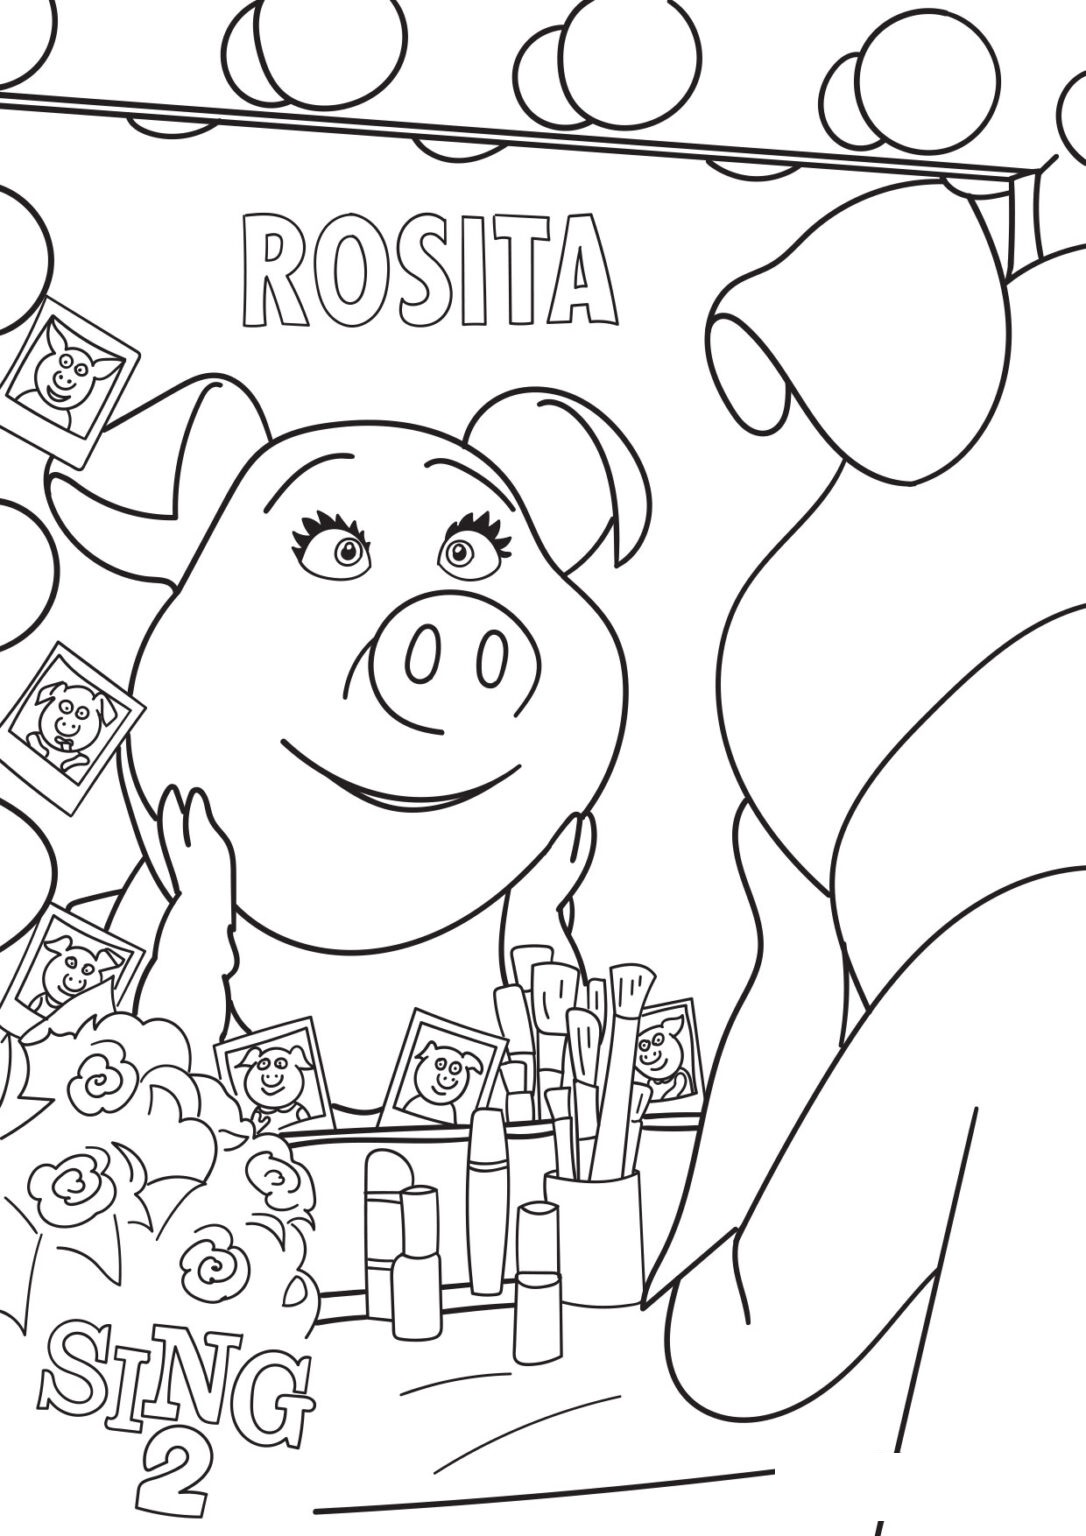 Sing 2 Rosita coloring page